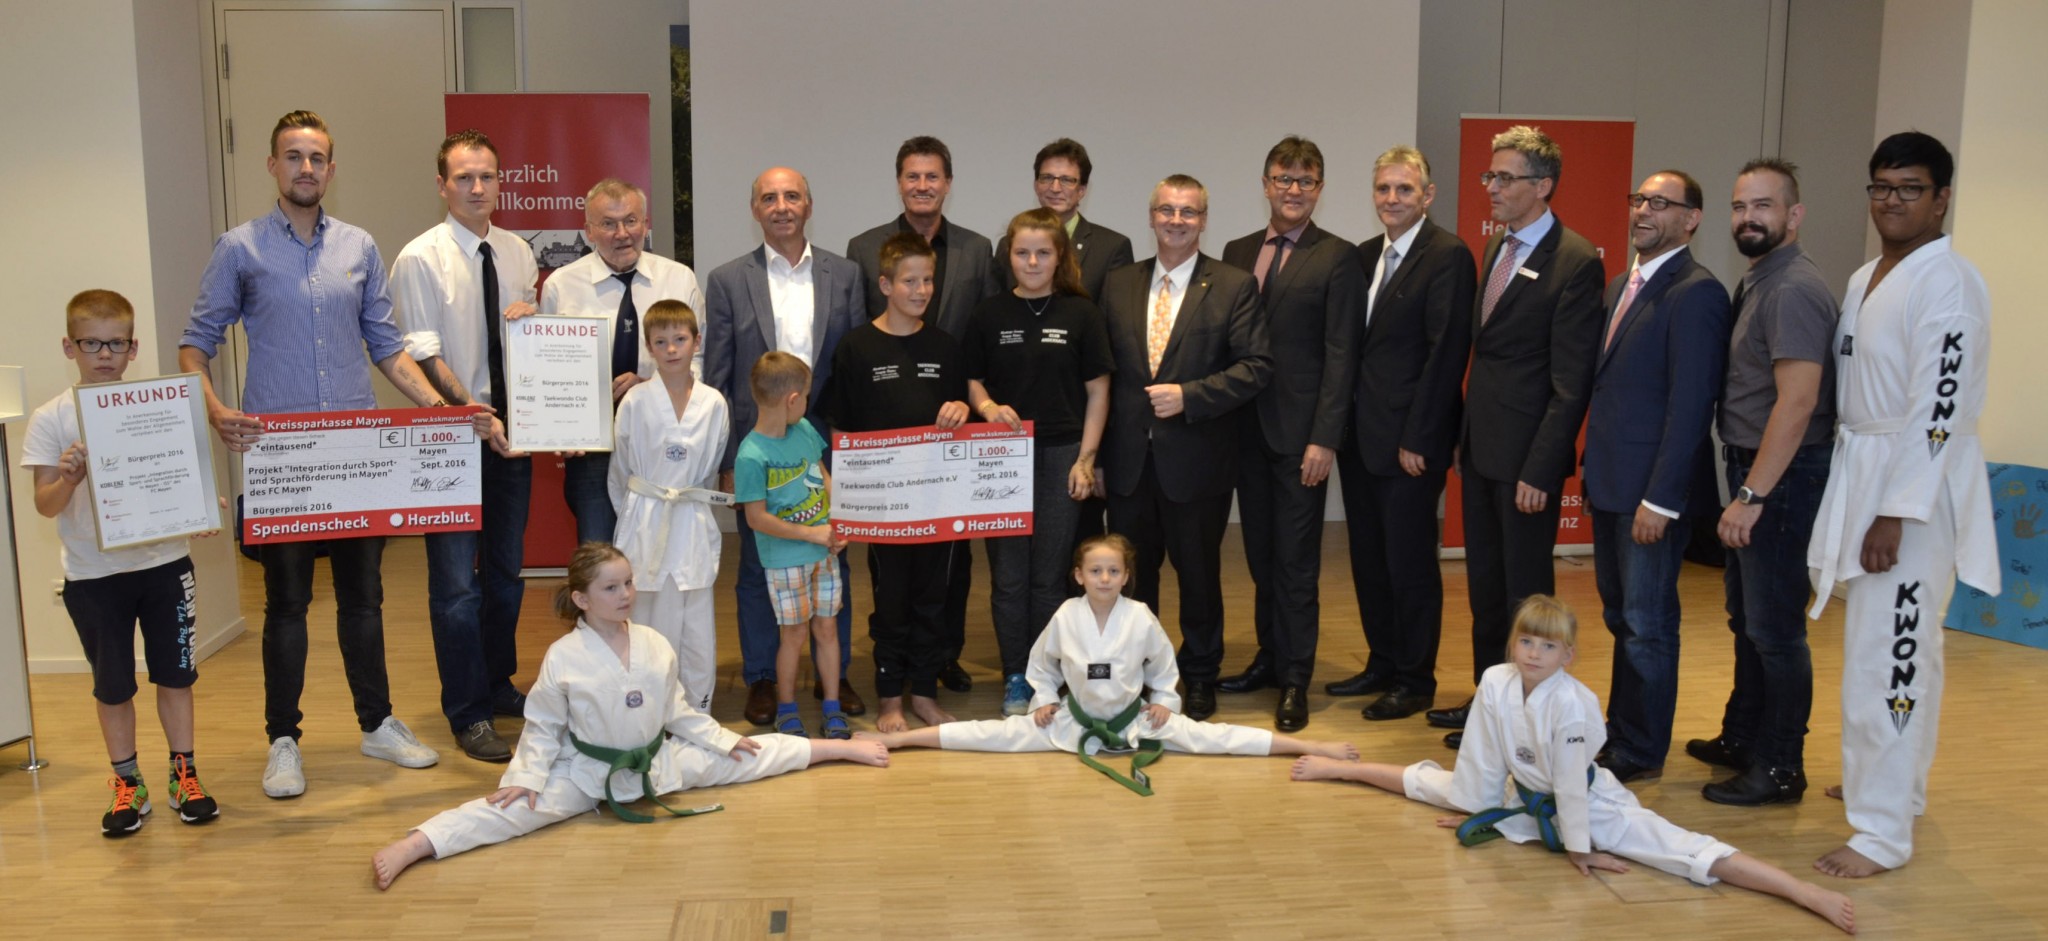 Bürgerpreis 2016 geht an Taekwondo Club Andernach und Integrationsprojekt ... - Eifel Zeitung